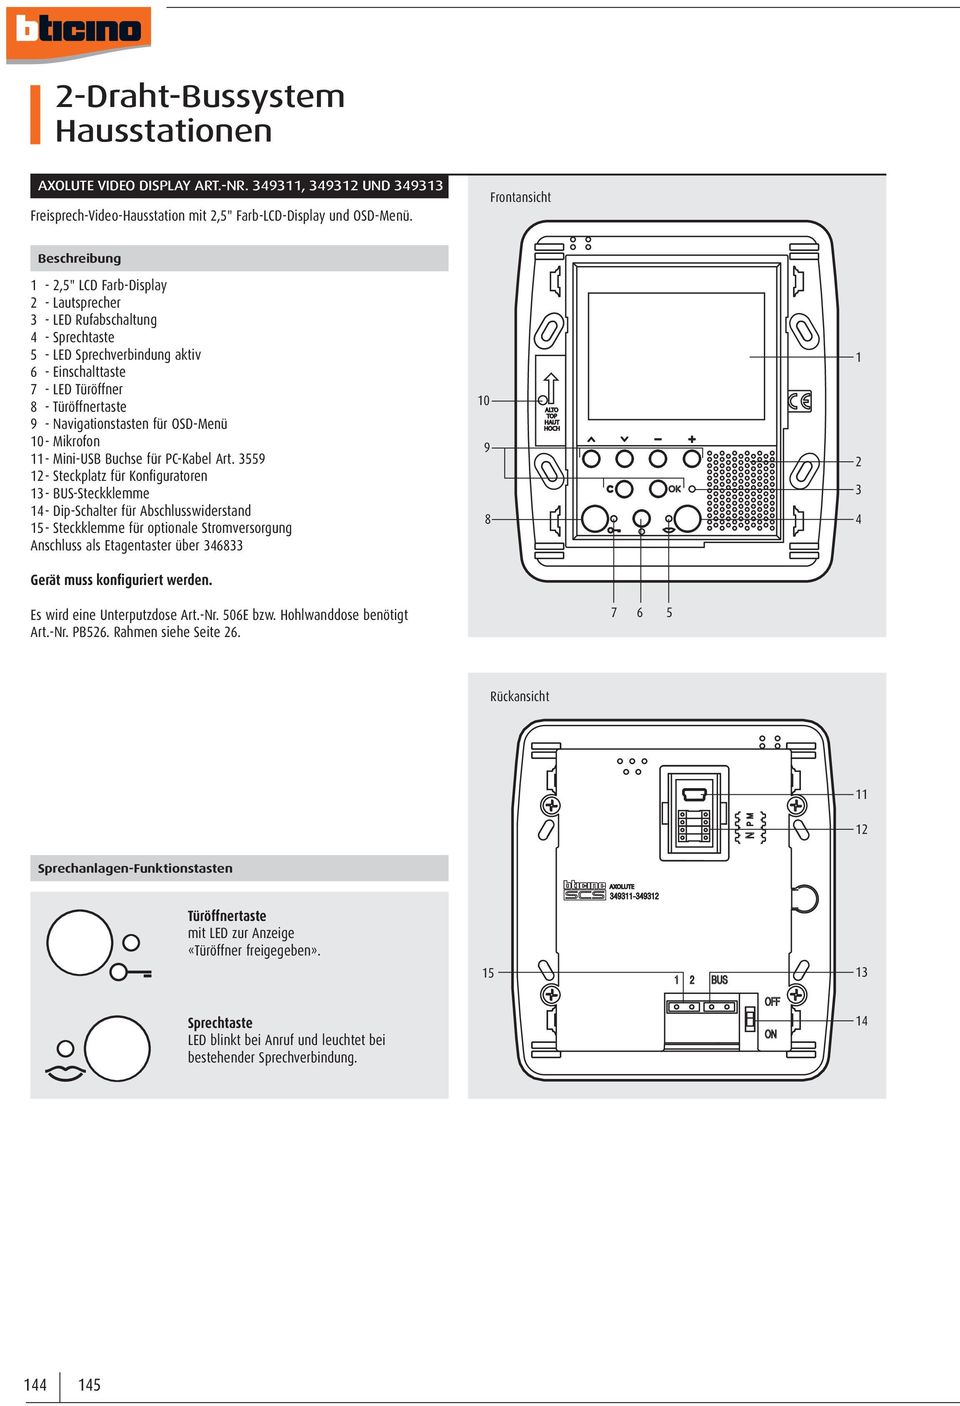 Navigationstasten für OSD-Menü 0 - Mikrofon - Mini-USB Buchse für PC-Kabel Art.